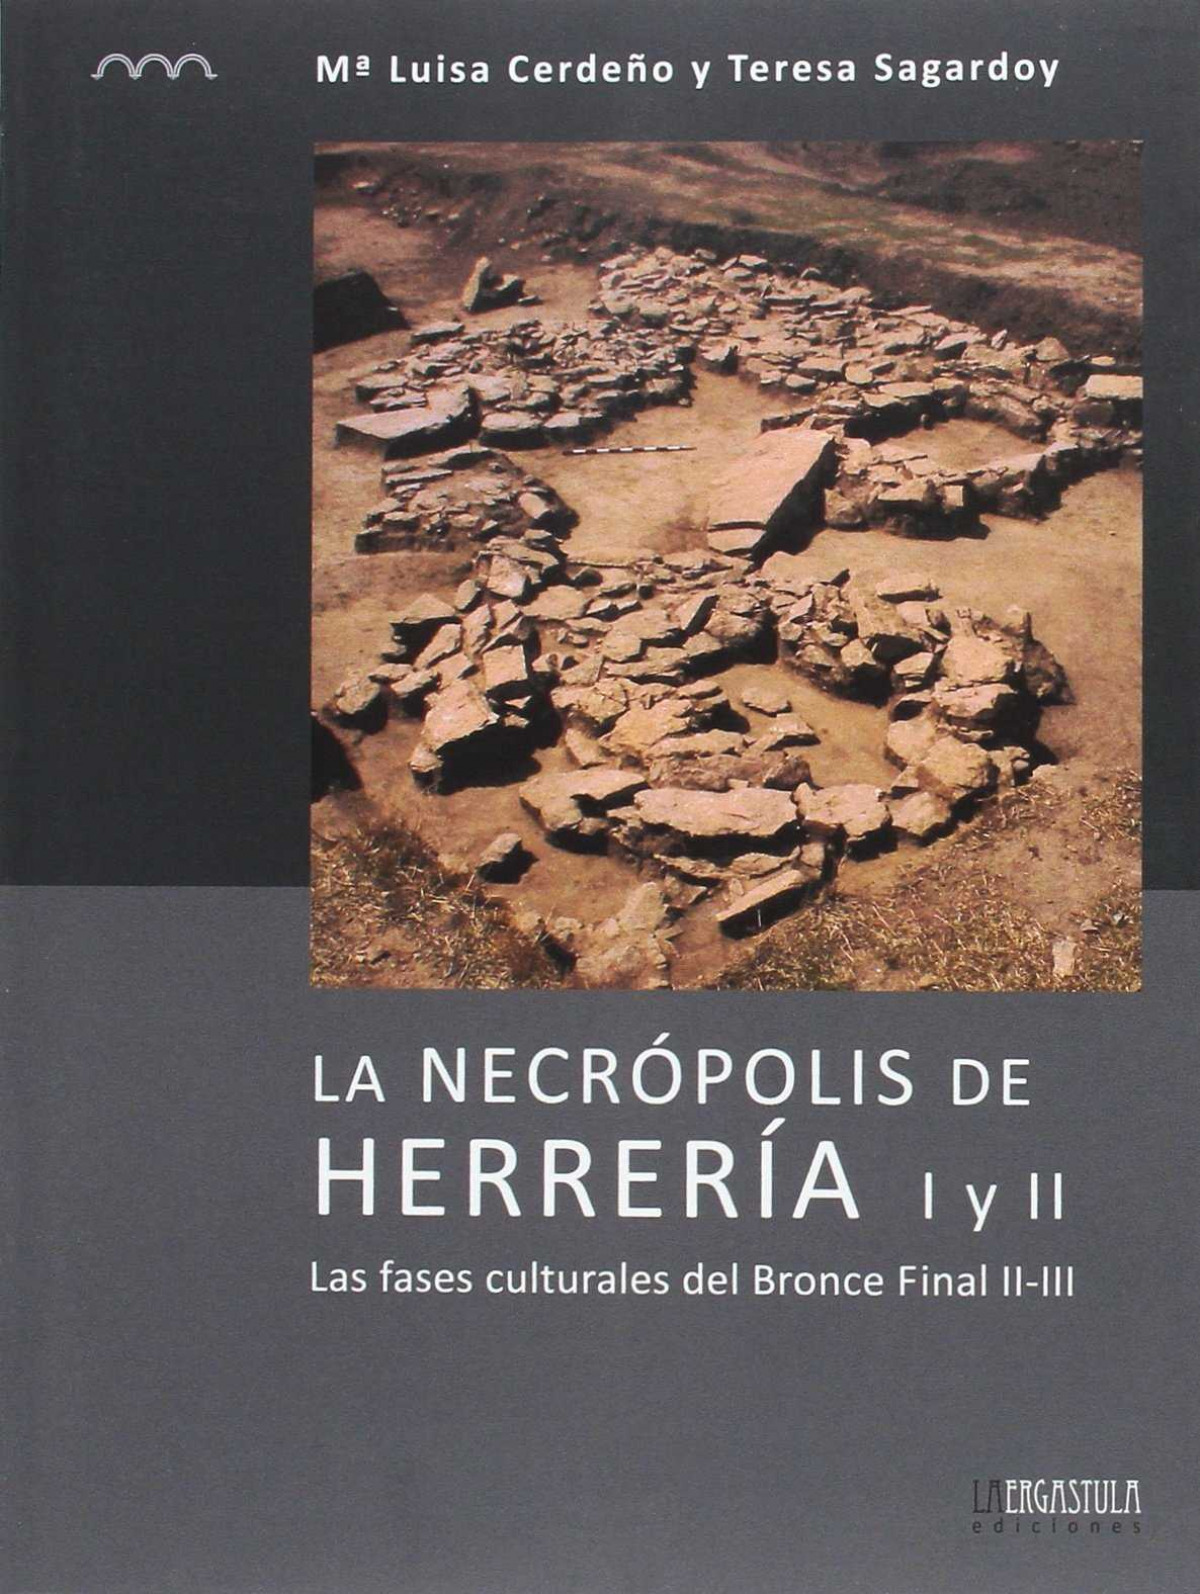 Necropolis de herreria i y ii - CerdeÑo